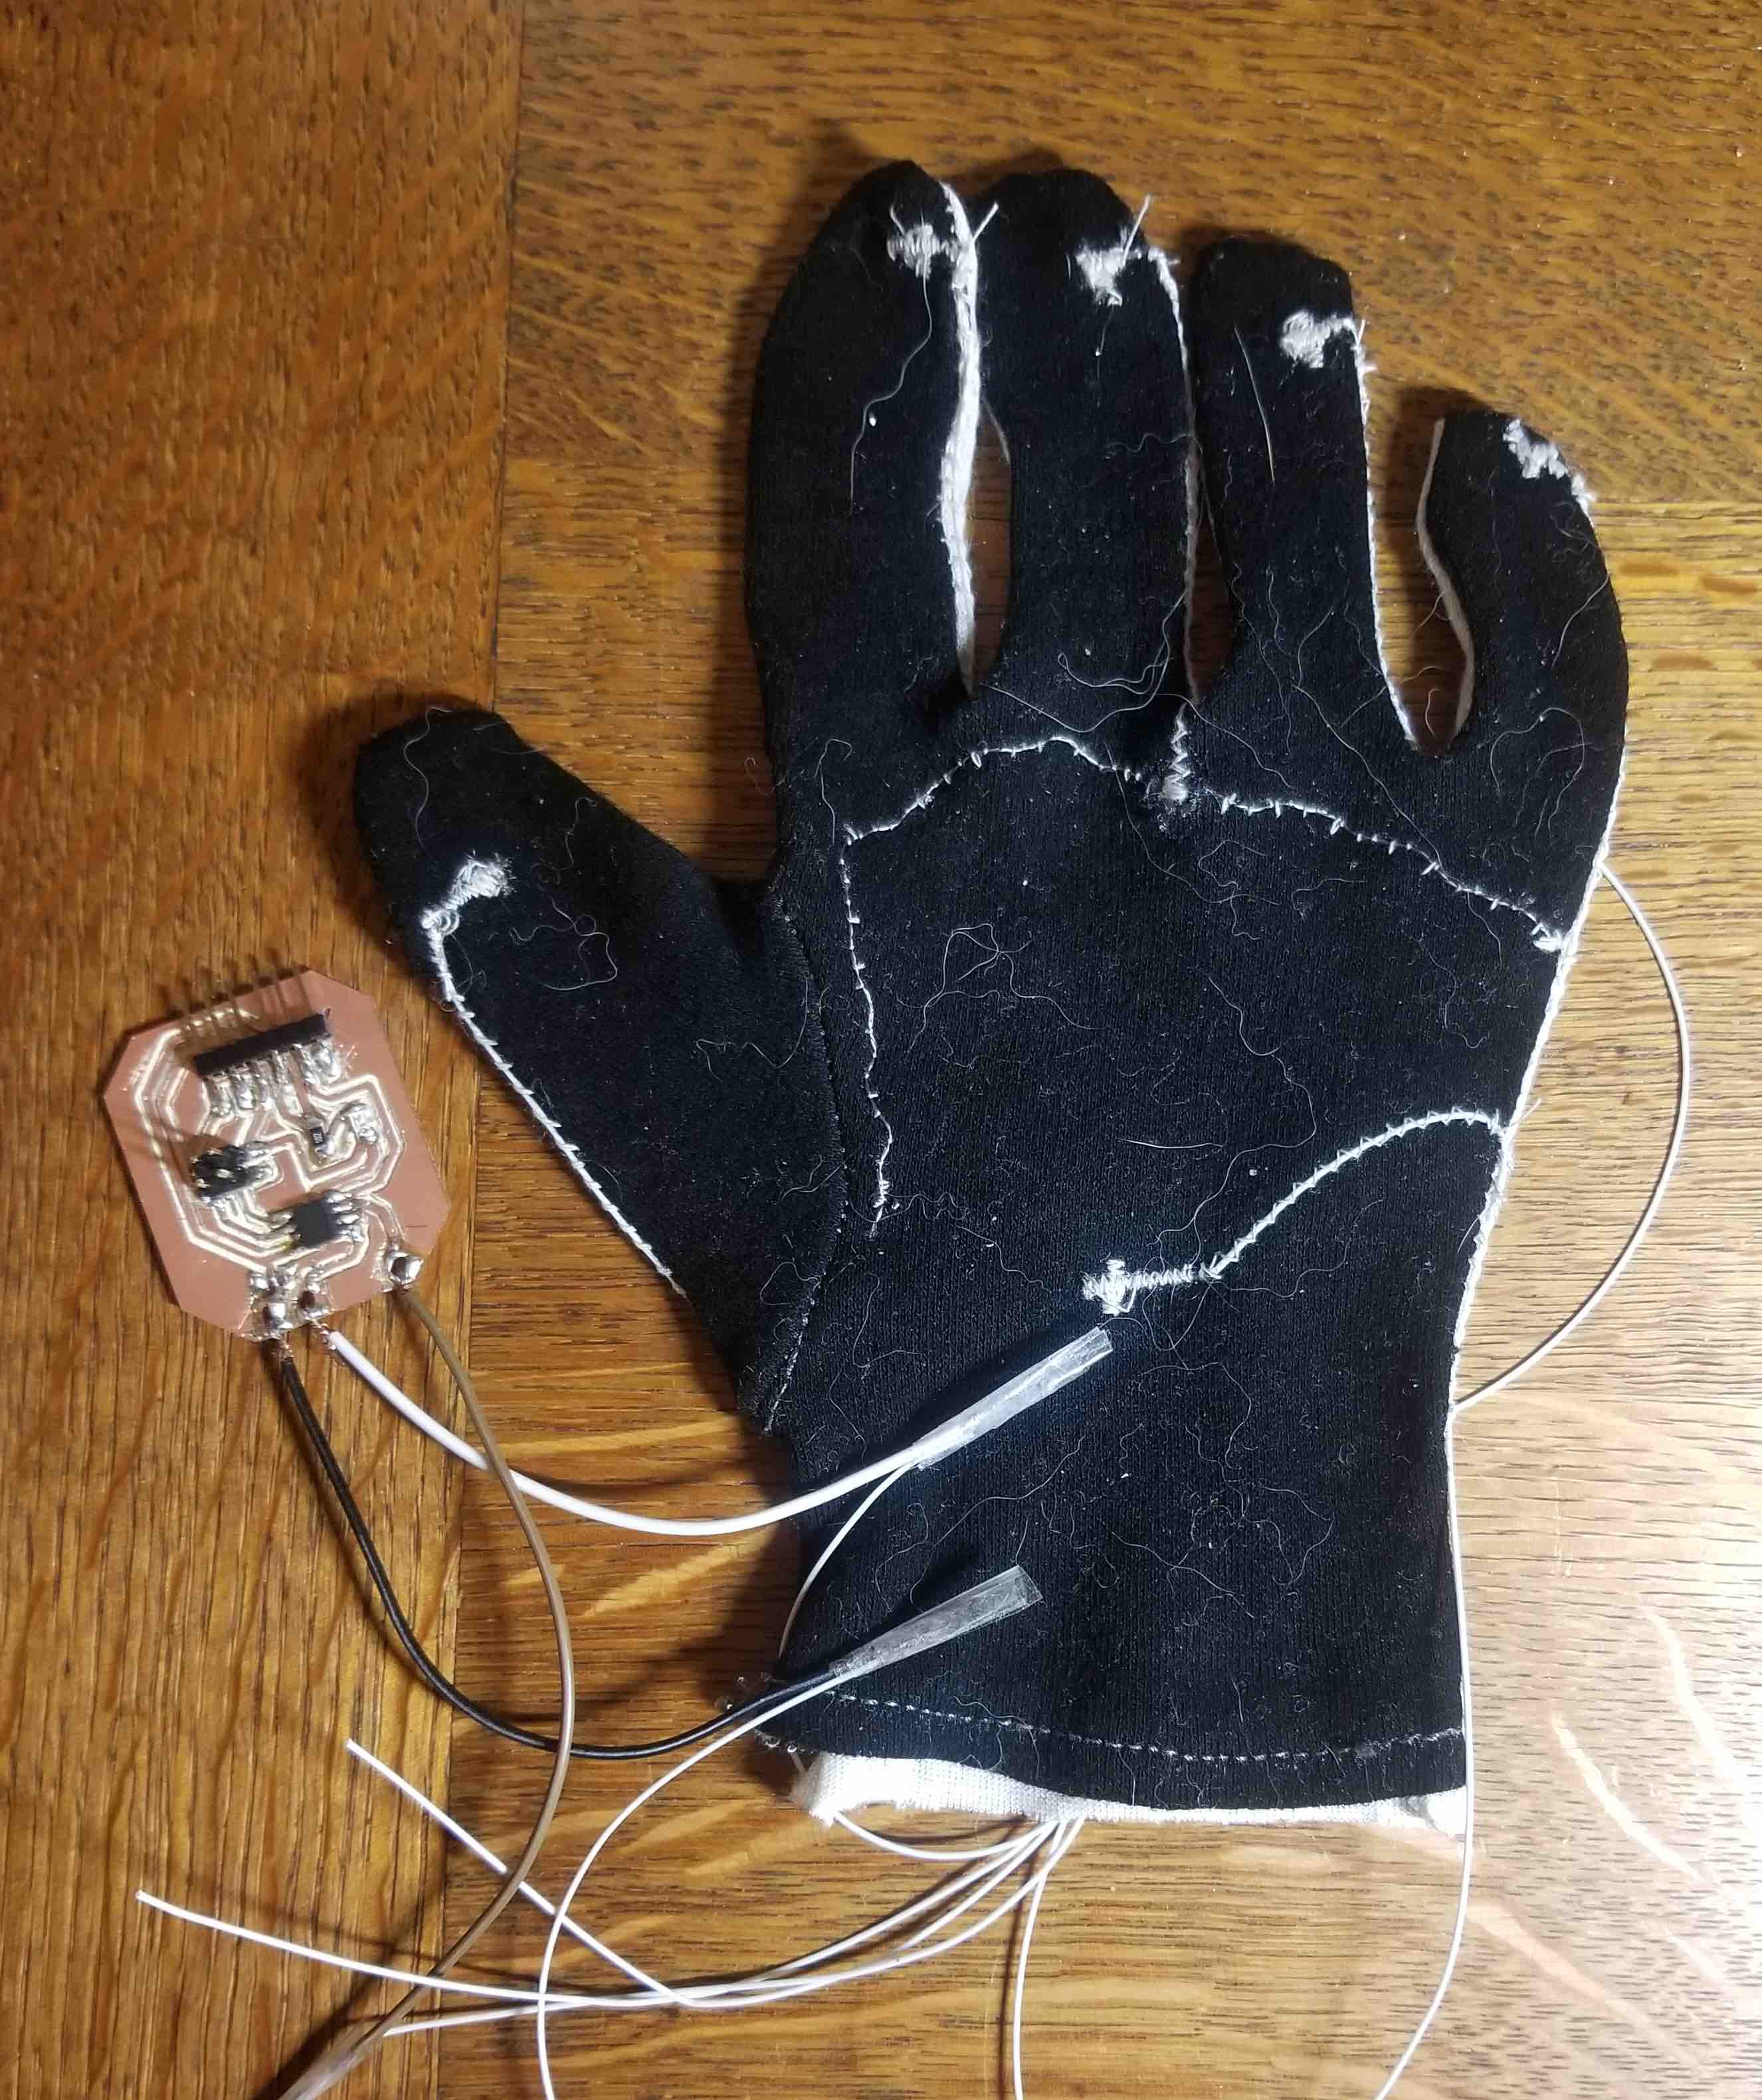 The voltage divider VR glove.